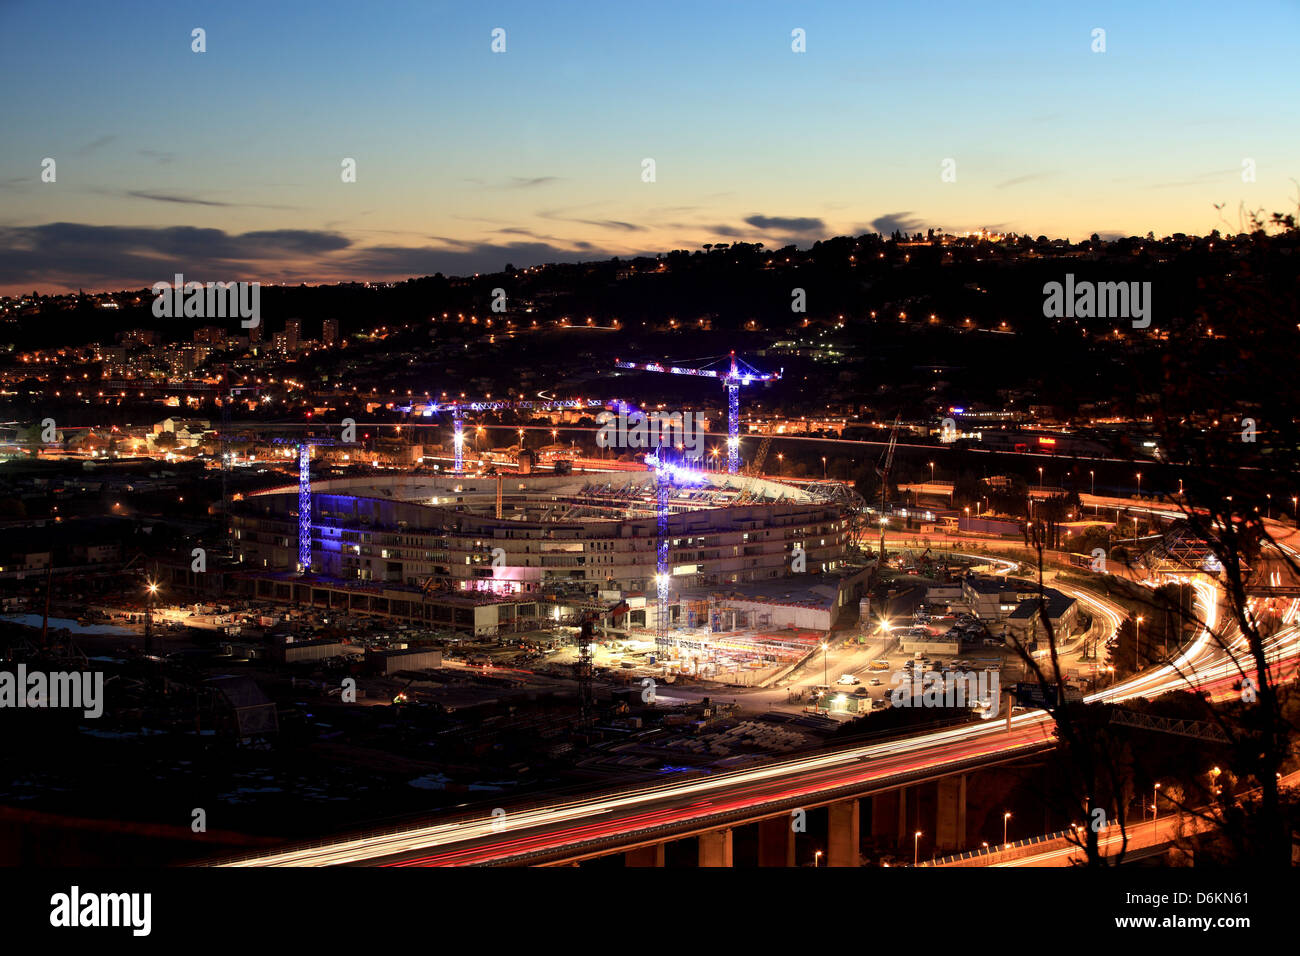 Der Bau des Stadions Allianz Riviera in Nizza Stockfoto